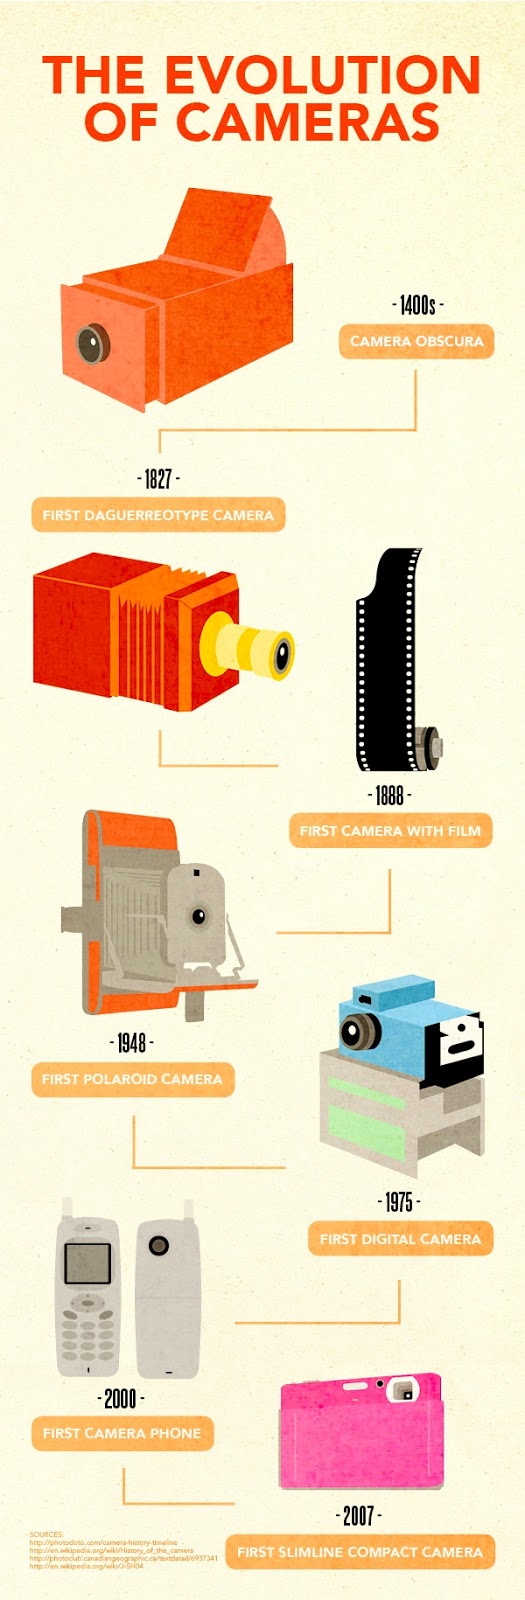 Evolution of cameras